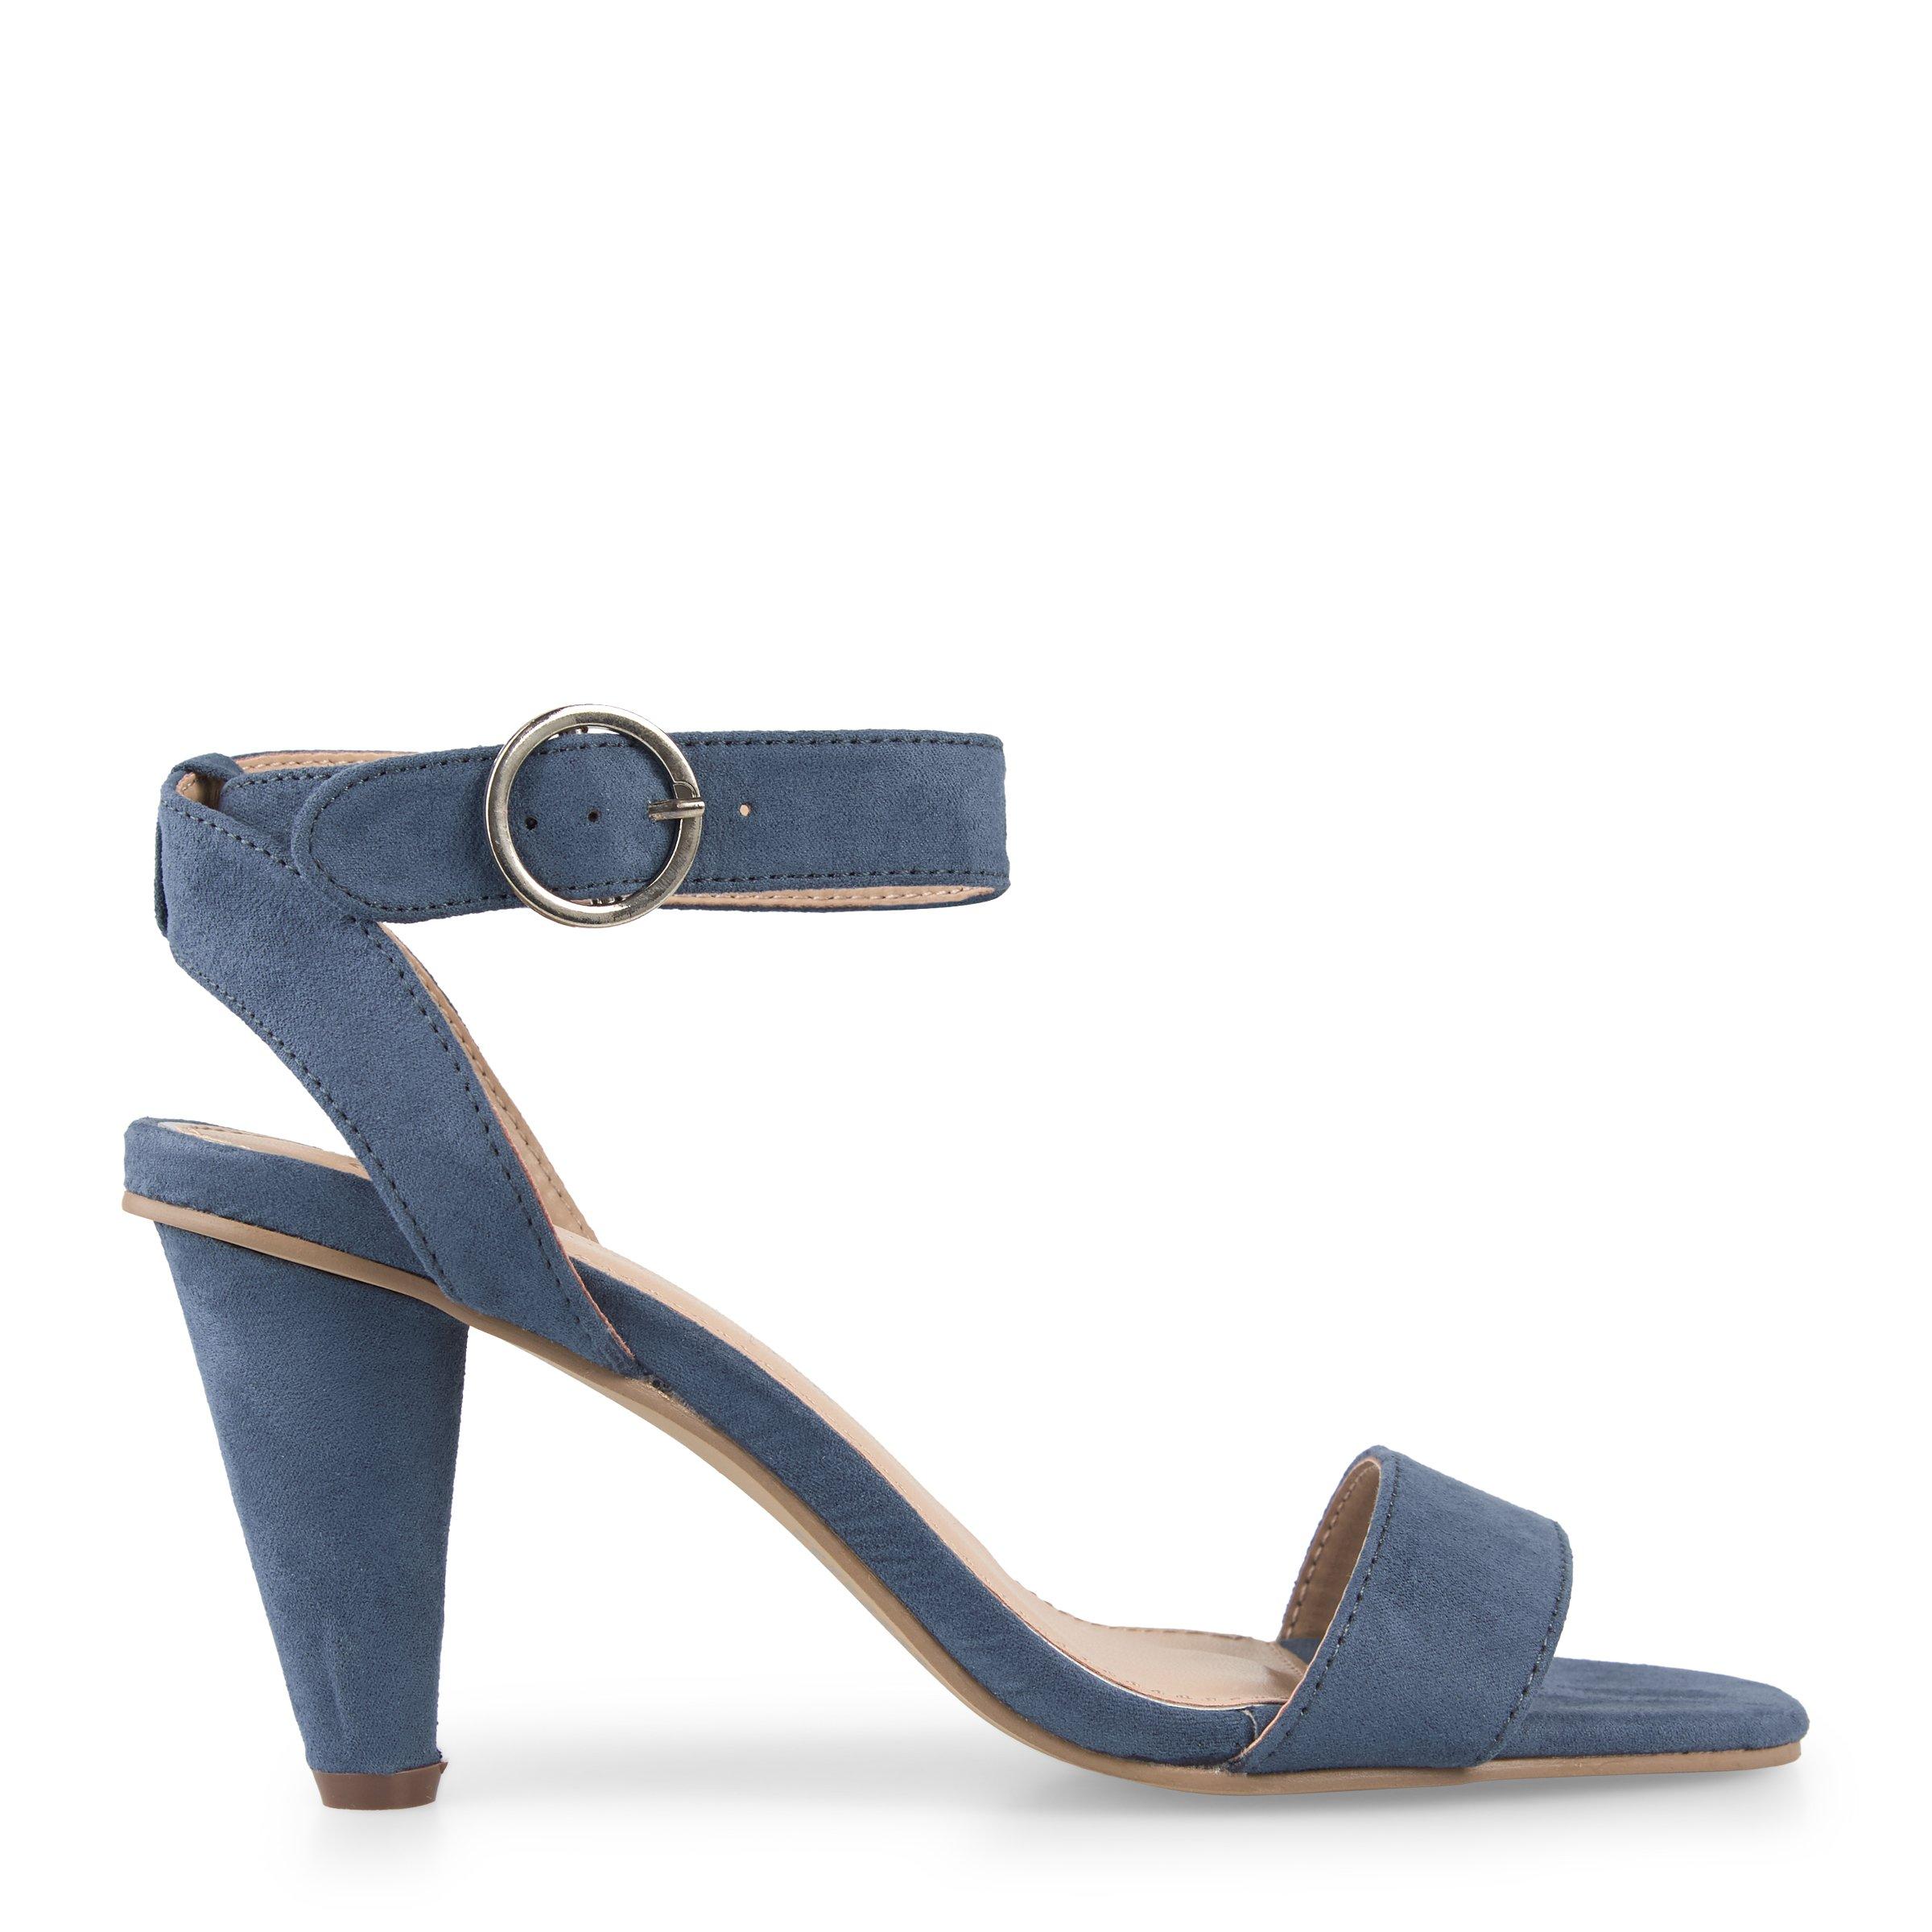 Buy Truworths Blue Ankle Strap Sandal Online | Truworths